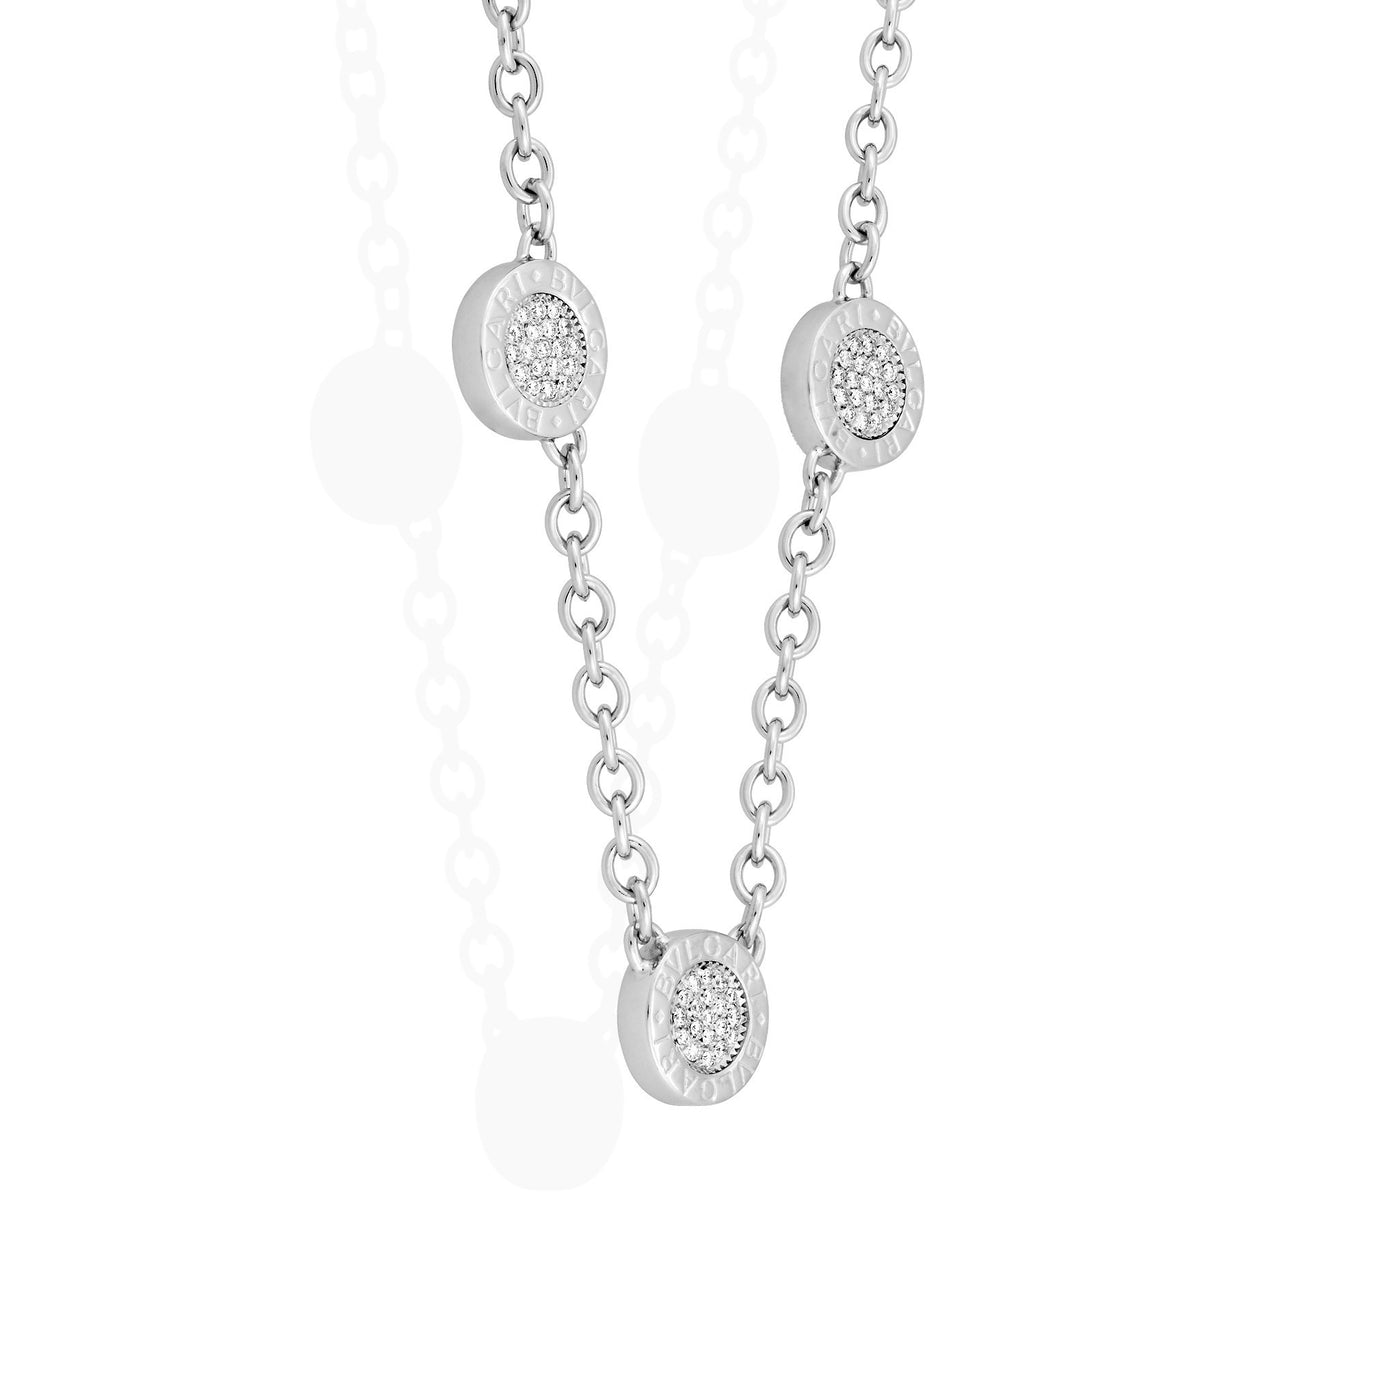 bvlgari diamond necklace price